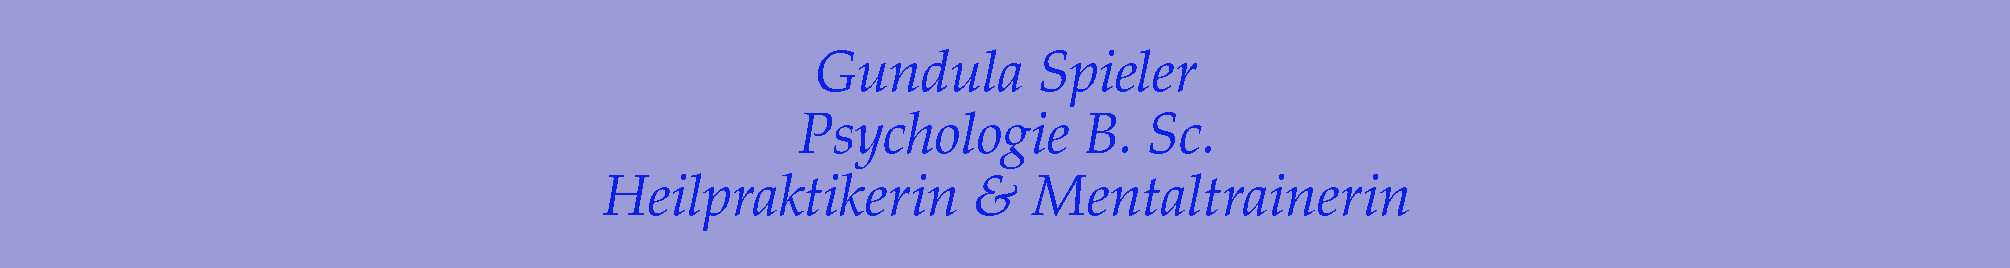 Gundula Spieler, Psychologie B. Sc., Heilpraktikerin, Mentaltrainerin